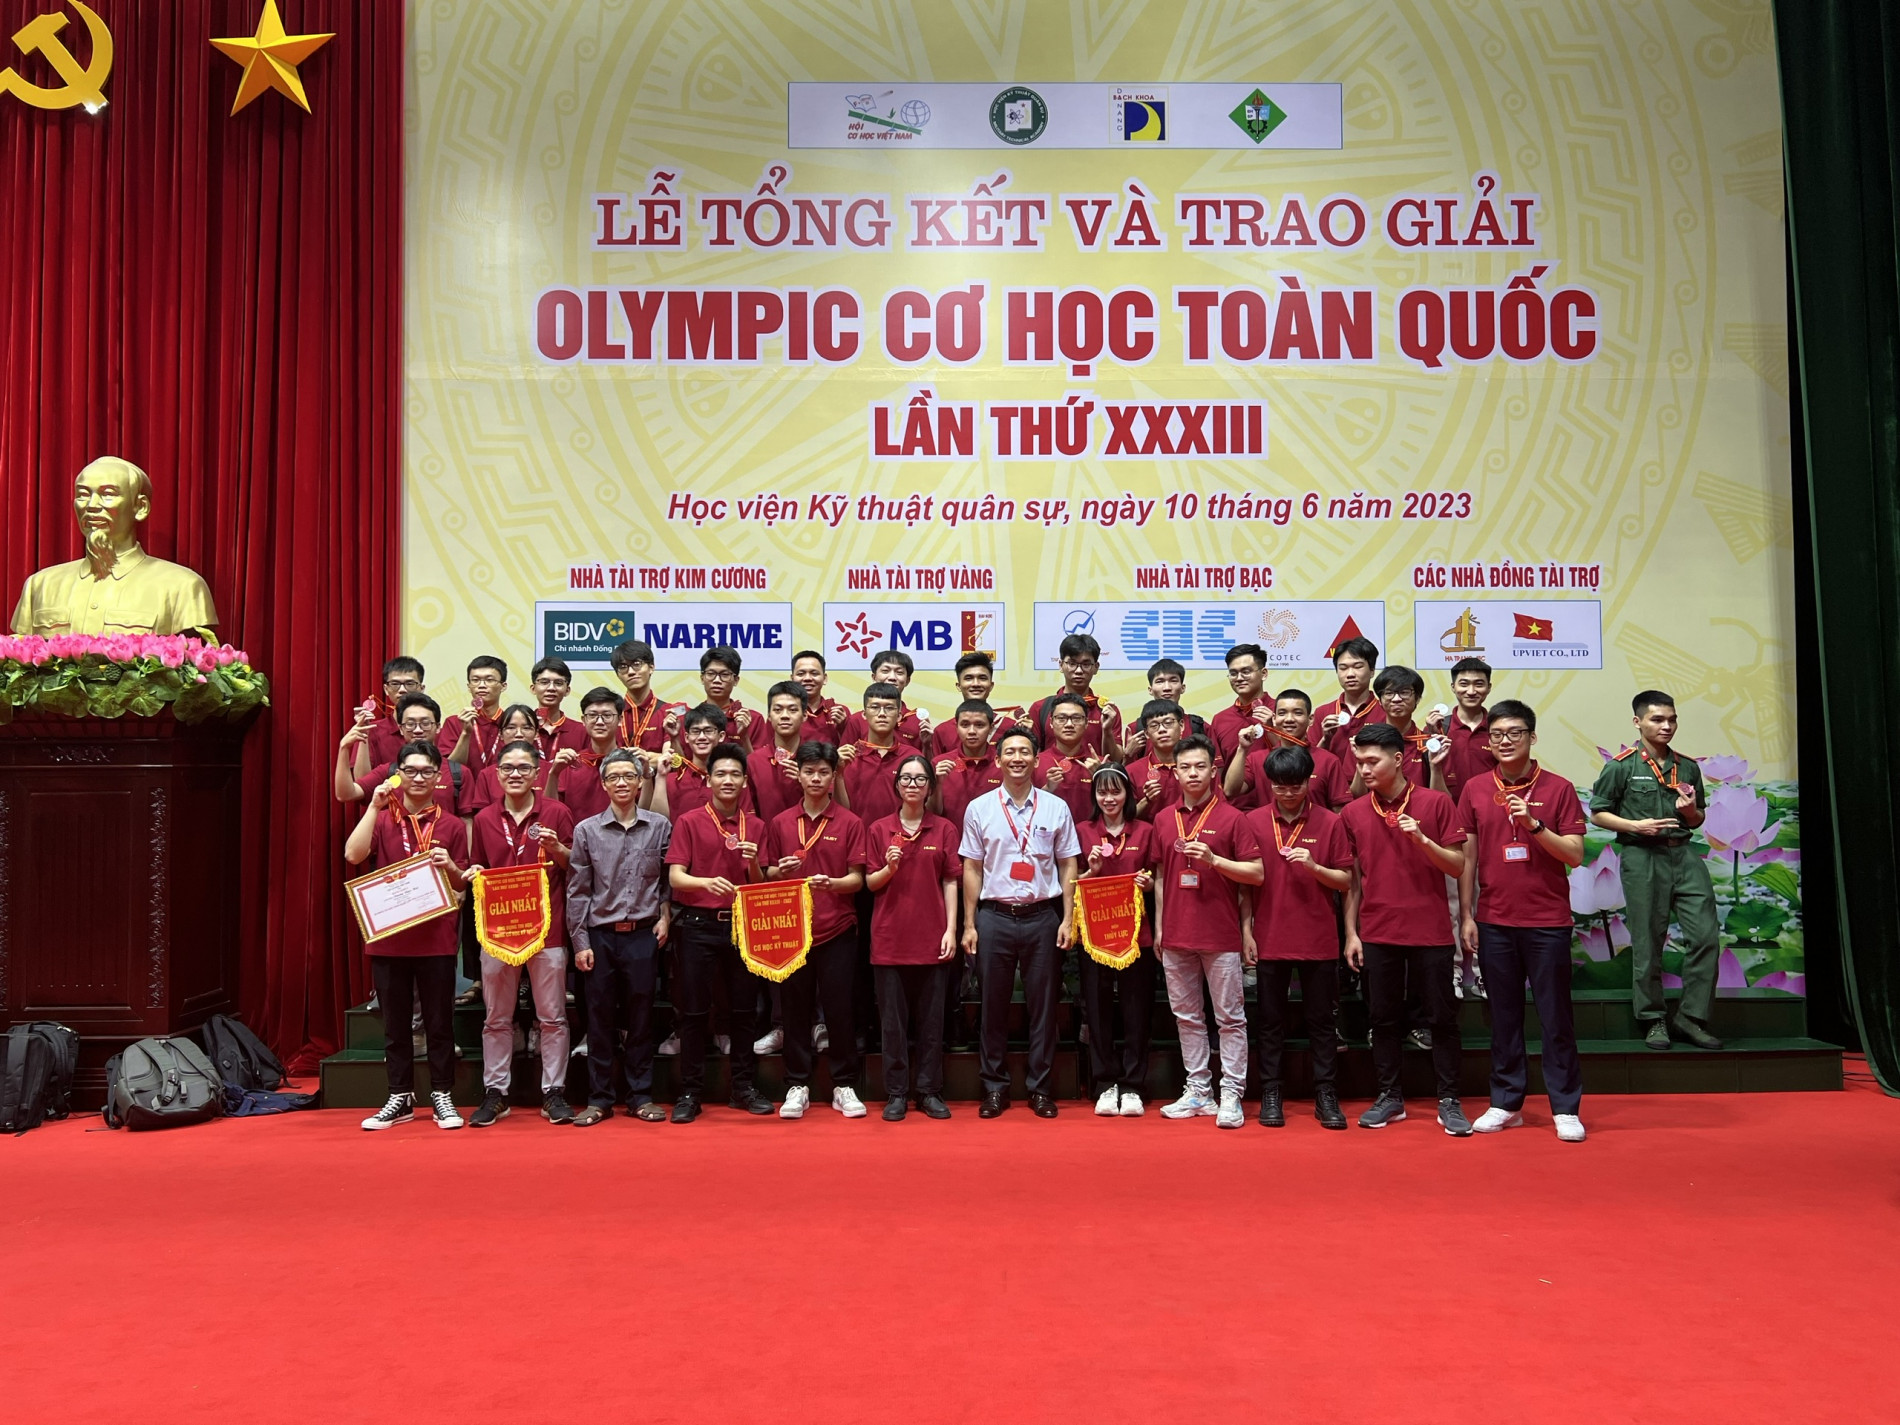 PGS. Phạm Văn Sáng (áo trắng) cùng các sinh viên, giảng viên Trường Cơ khí, Đại học Nhà cái uy tín io
 đạt thành tích cao tạo cuộc thi Olympic Cơ học toàn quốc năm 2023